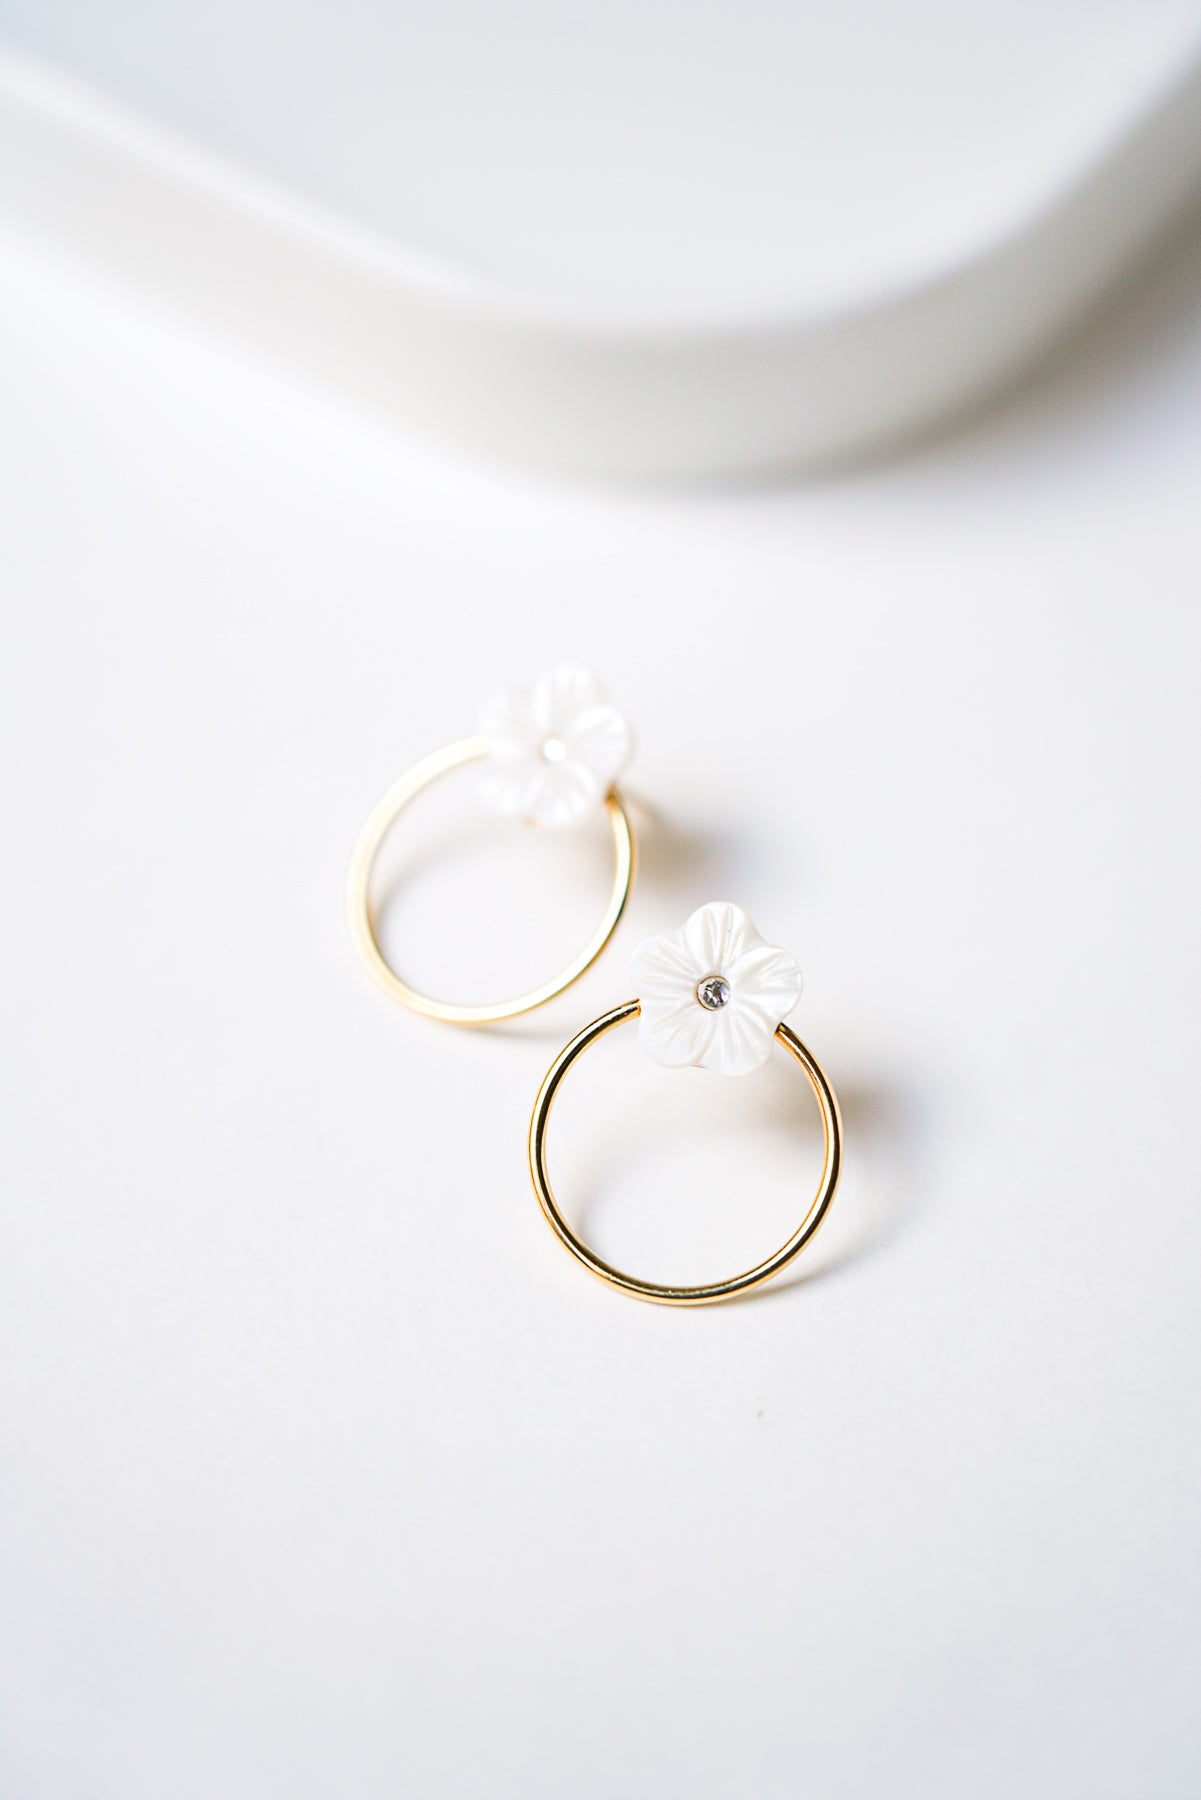 Boucles d'oreille avec anneau doré et petite fleur blanche en nacre